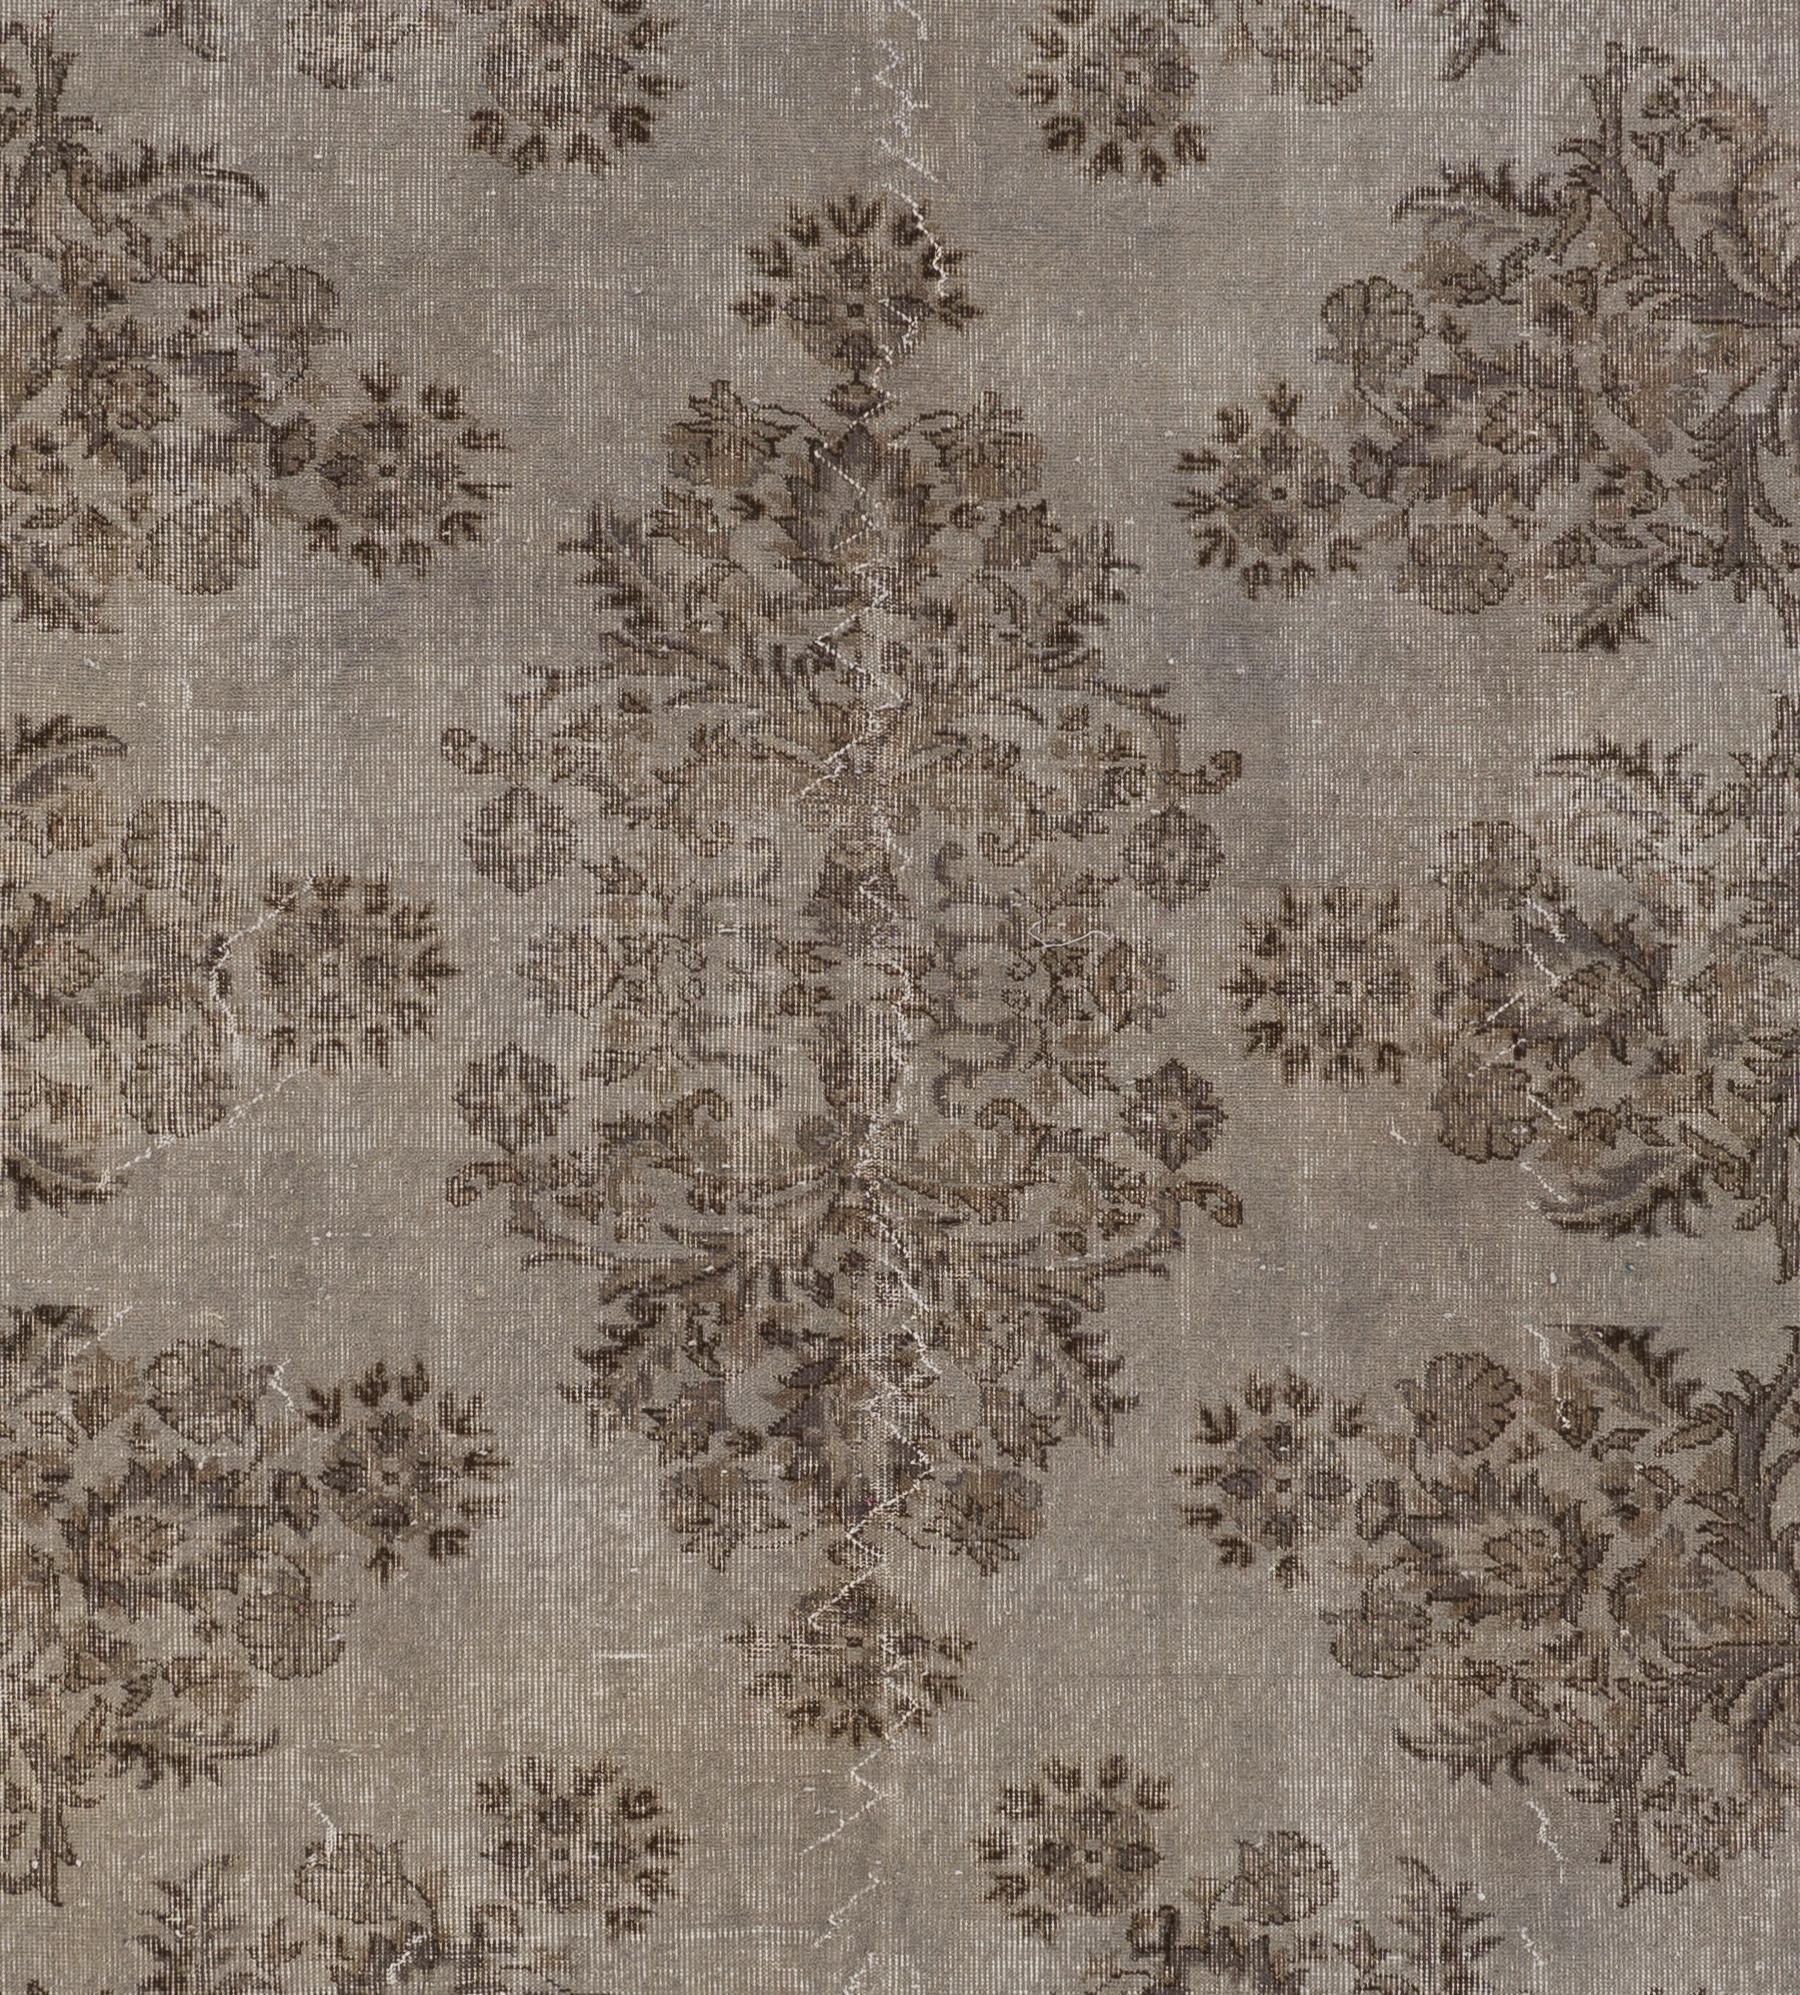 Modern 7.2x10.5 Ft Handmade Floral Garden Design Large Rug. Gray Vintage  Carpet For Sale